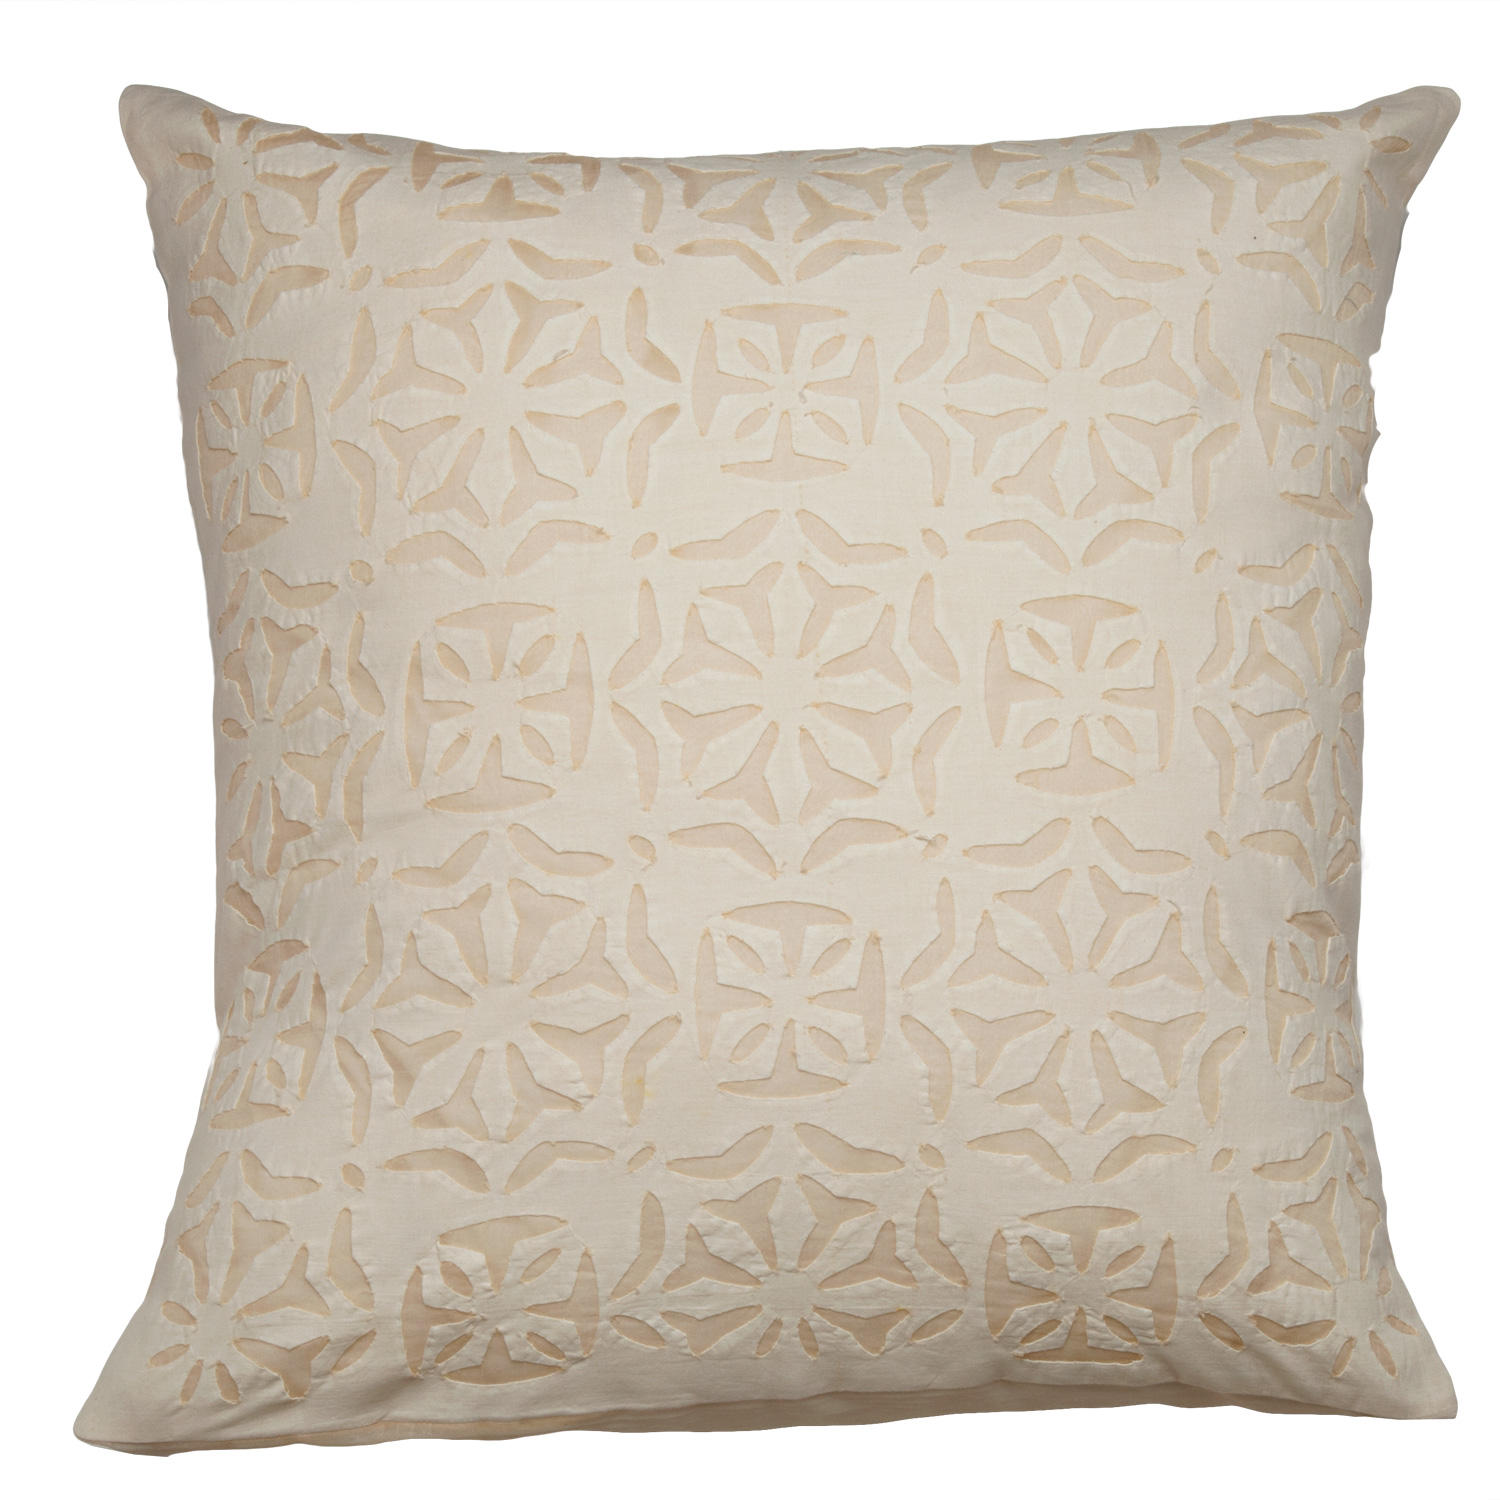 Ayana Applique Pillow Cover - Bisque: marigoldliving.com